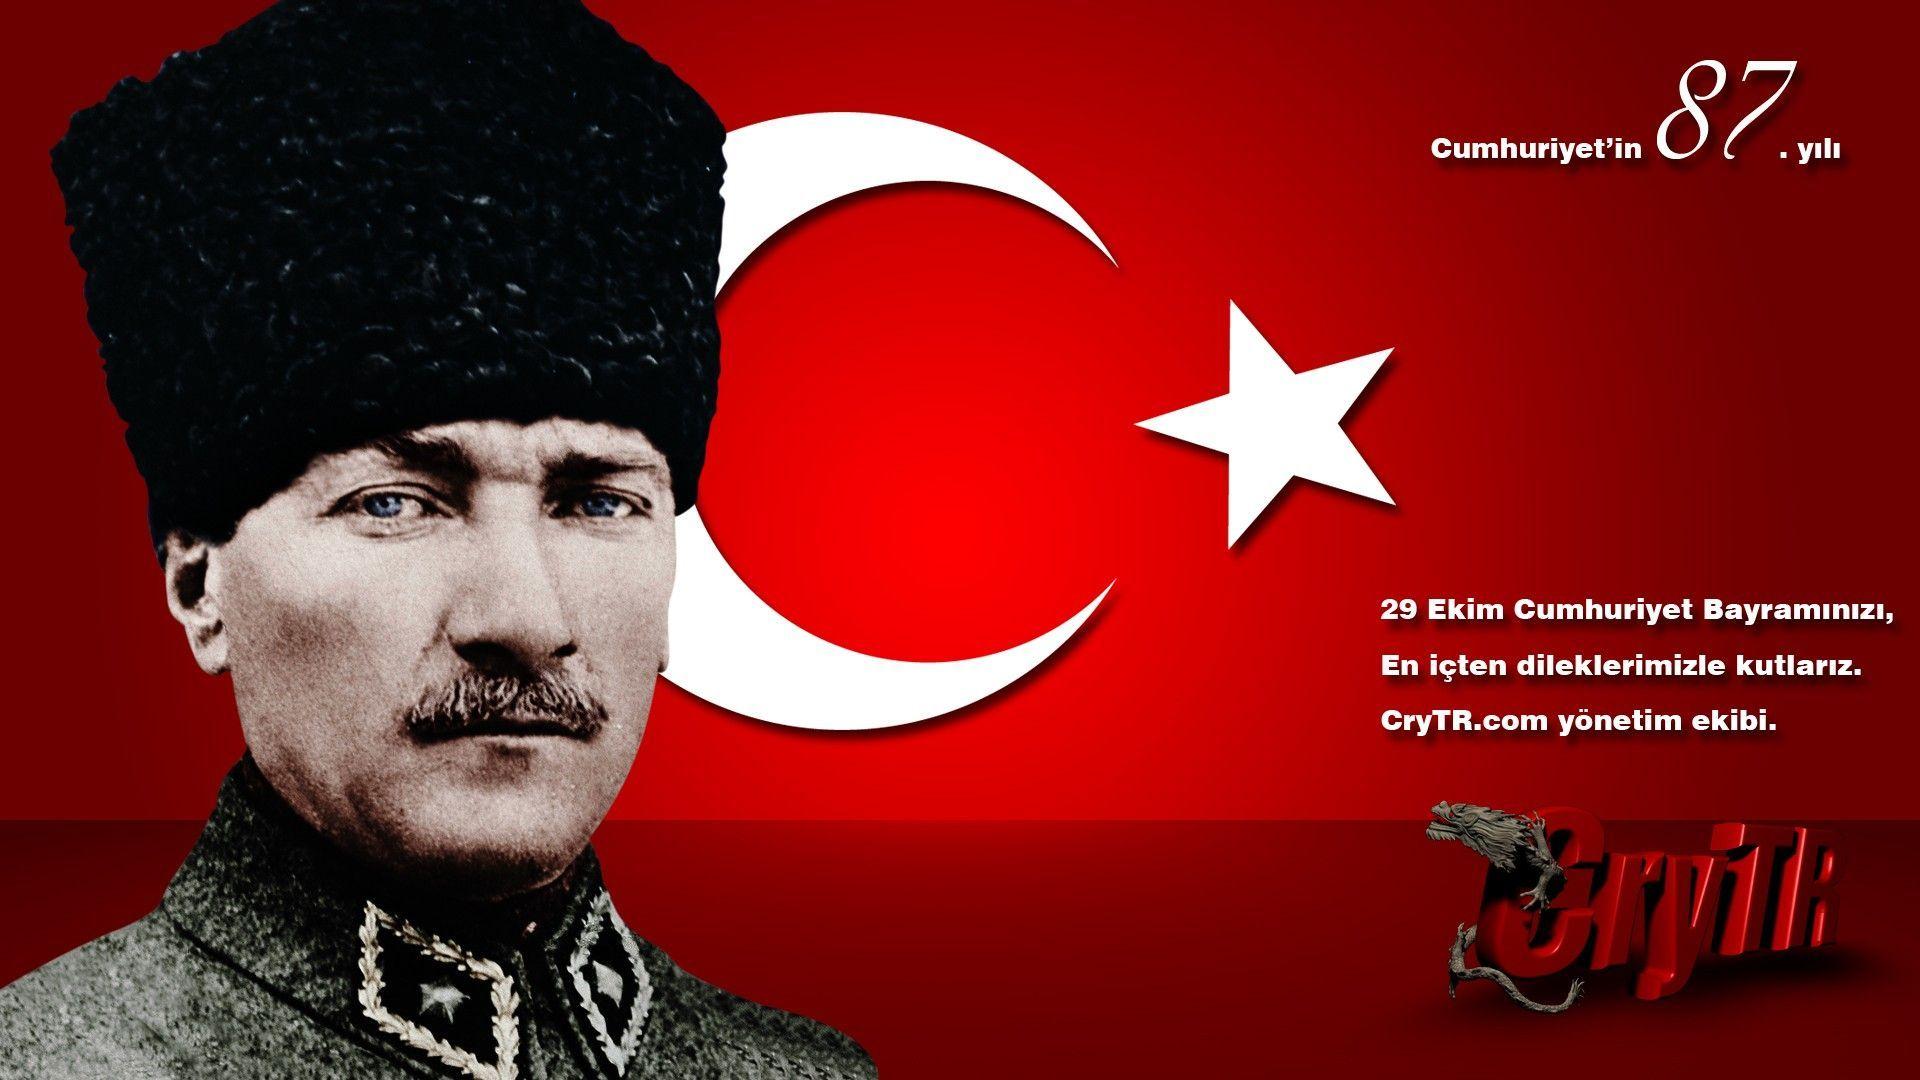 Wallpaper Ataturk HD Untitled 2560x1920 #ataturk